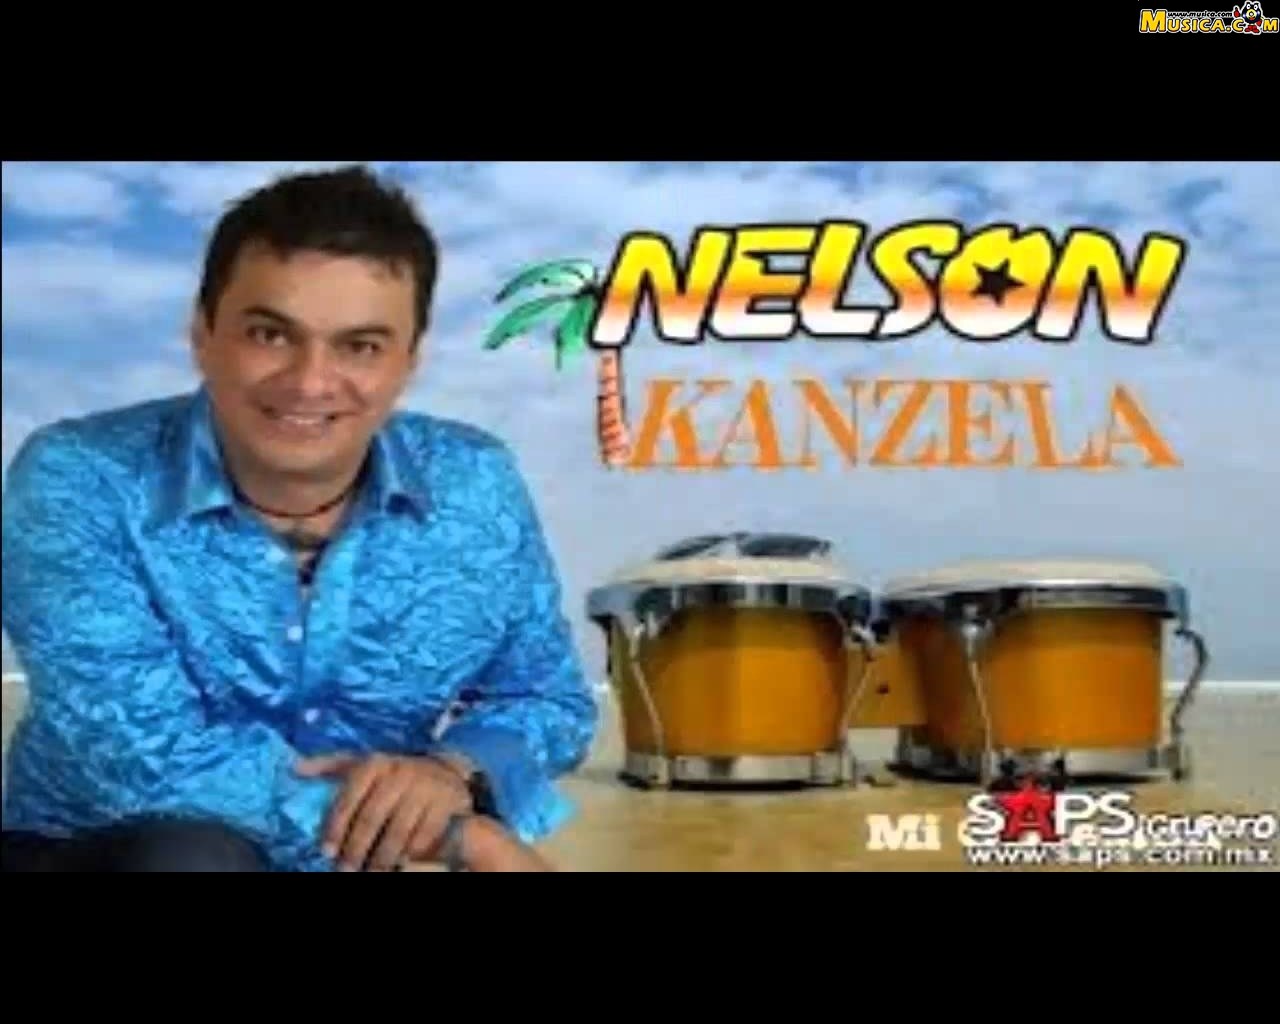 Fondo de pantalla de Nelson Kanzela